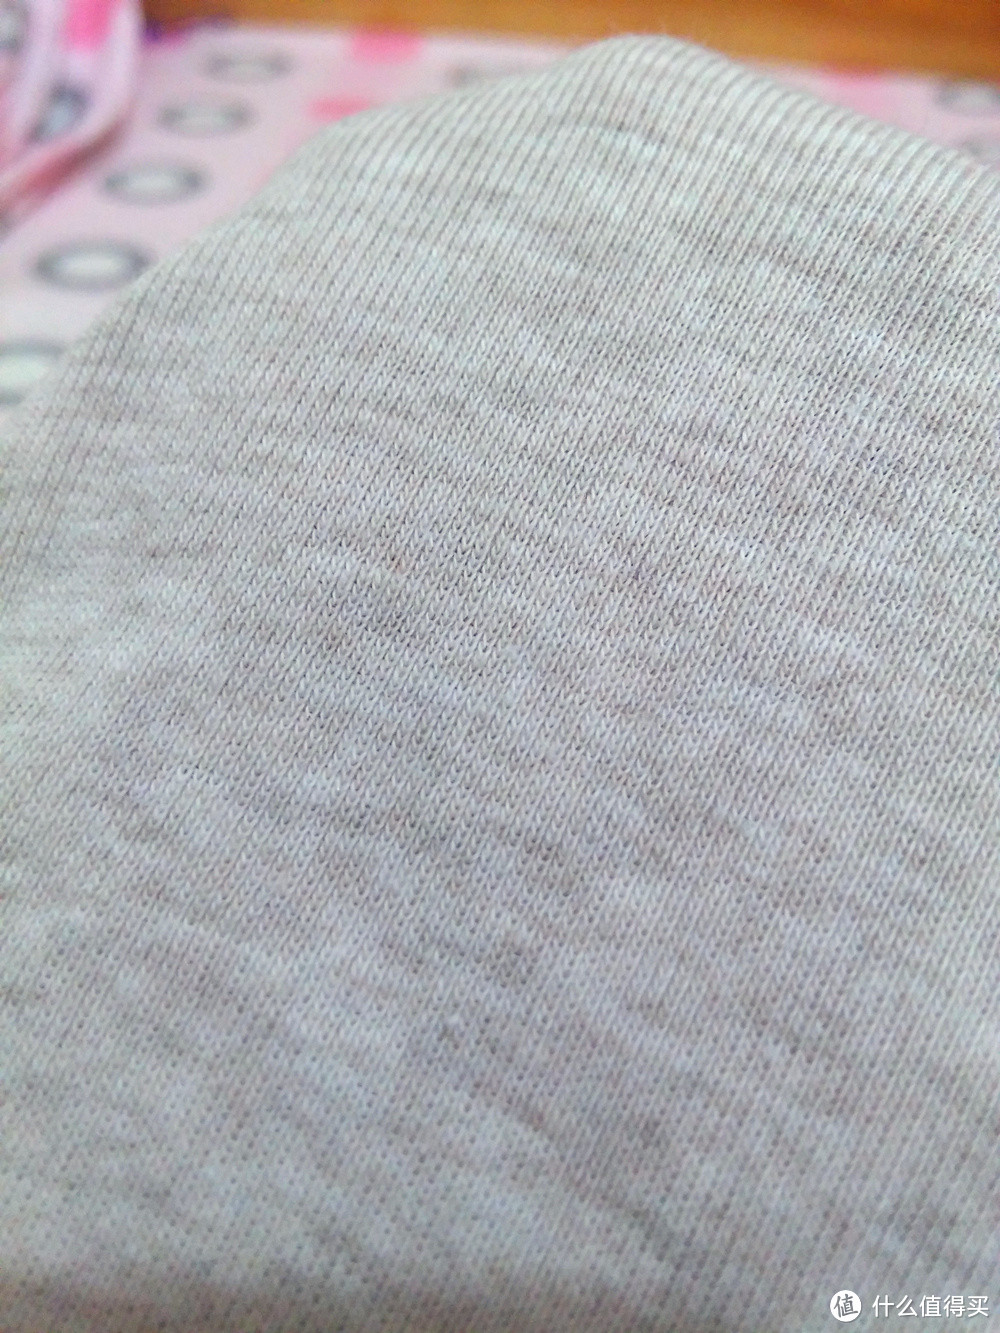 极致稀有的 USA Pima 棉：lativ 女款T恤附与 UNIQLO 对比